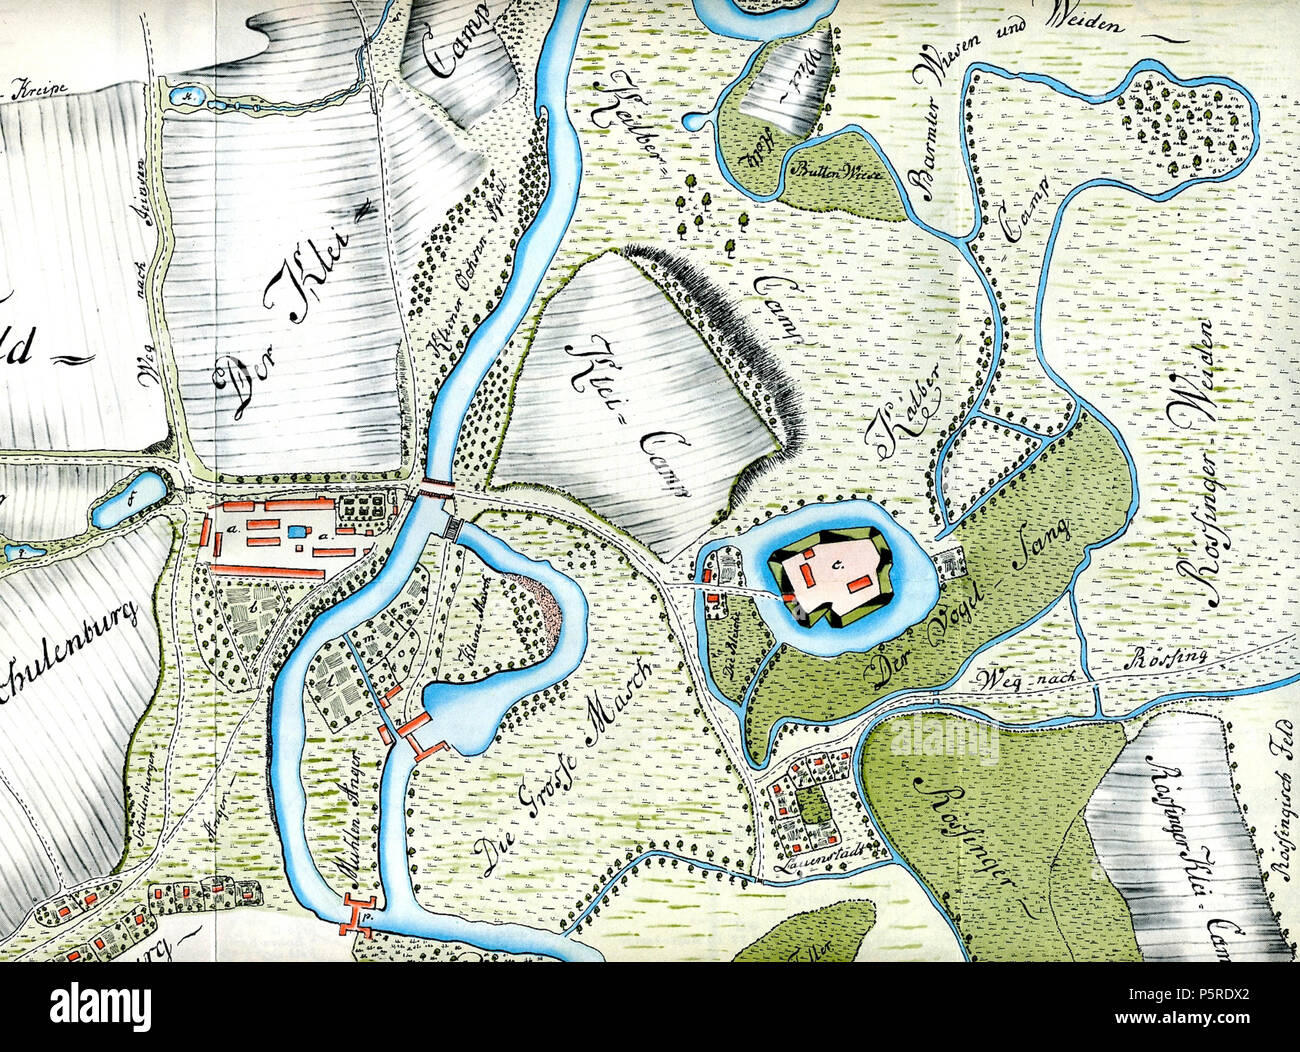 N/A. English: en: A 1771 map showing Calenberg, Lauenstadt and Schulenburg in the borough of Pattensen, Lower Saxony, Germany. The map is not north-oriented. Key: a. The Amt of Hof zu Calenberg; b. Kitchen and arboretum; c. Old castle of Calenberg; d. Licent–Bedienten accommodation; e. Deputat–Bedienten accommodation; f. Oehlmühle millpond; g. Little Pond; k. Posen Pond; l. The hop garden; m. Deputat garden; n. The mill; o. Garden; p. Water overshoot; q. The wells by the ponds Deutsch: Ausschnitt einer historischen Karte aus dem Jahr 1771 mit den Berg Calenberg, Alt Calenberg, Lauenstadt und S Stock Photo